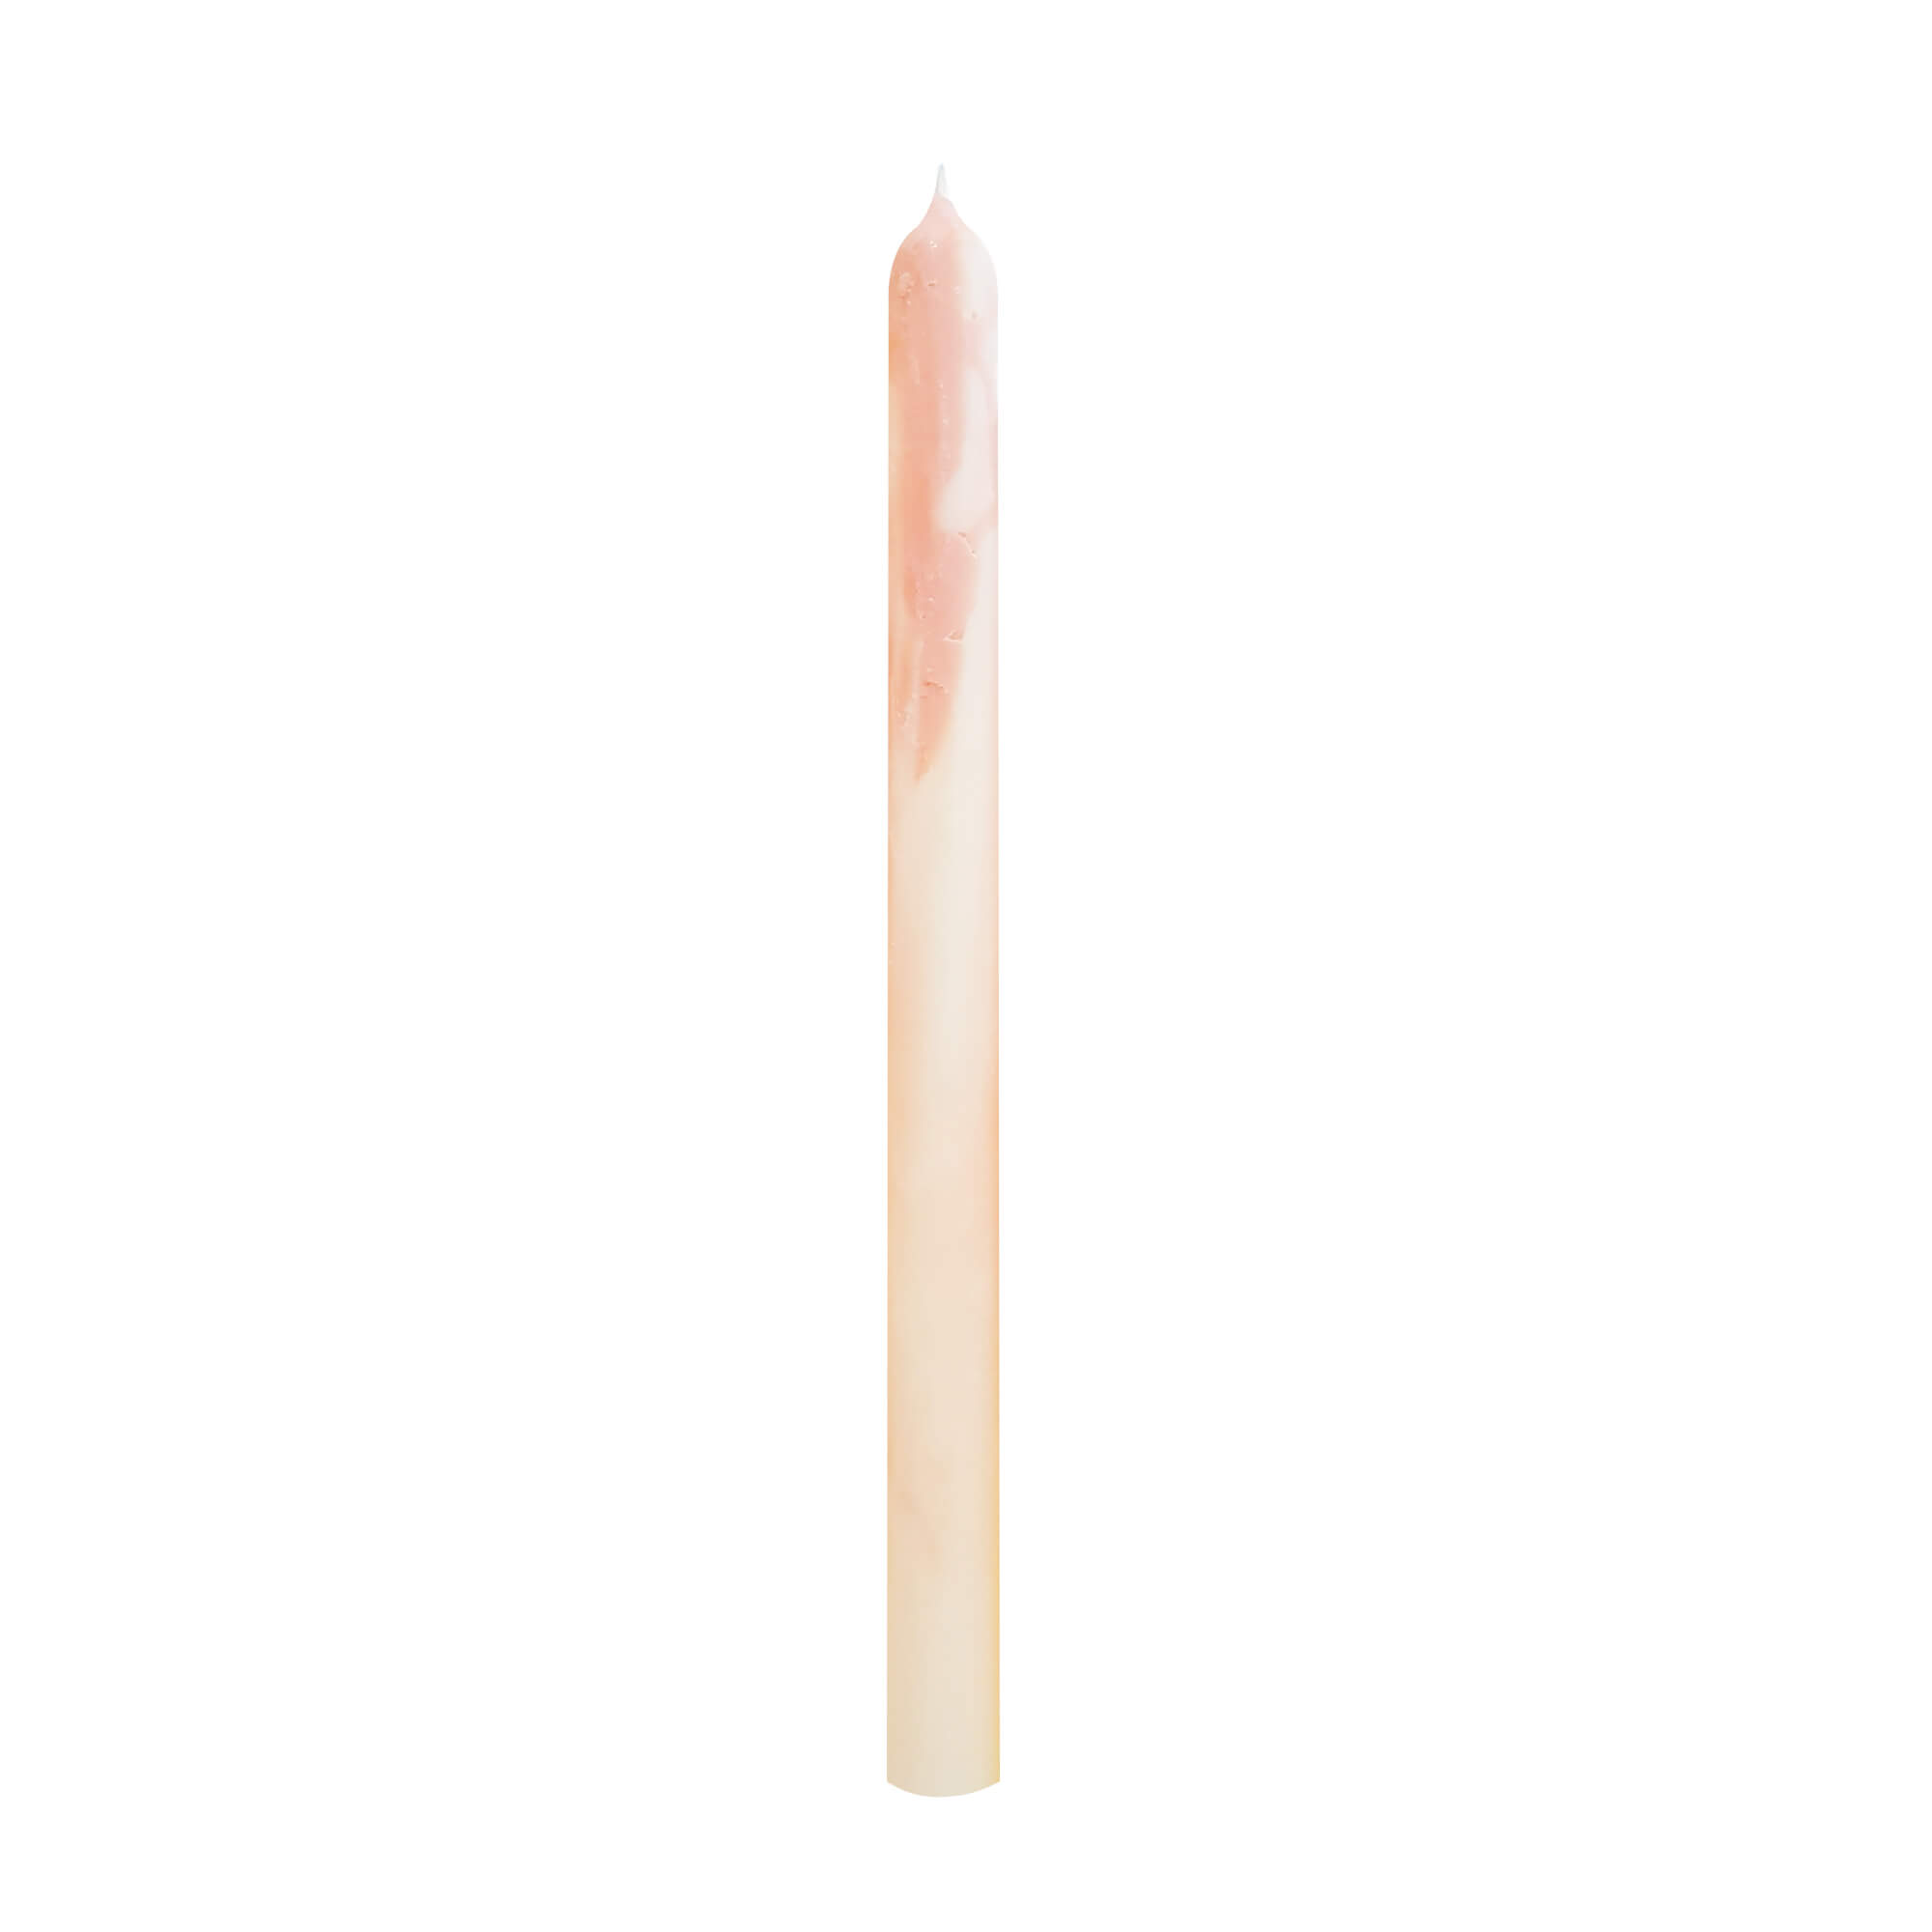 Nến sáp tự nhiên cẩm thạch màu trắng - hồng 28cm X 2.2cm